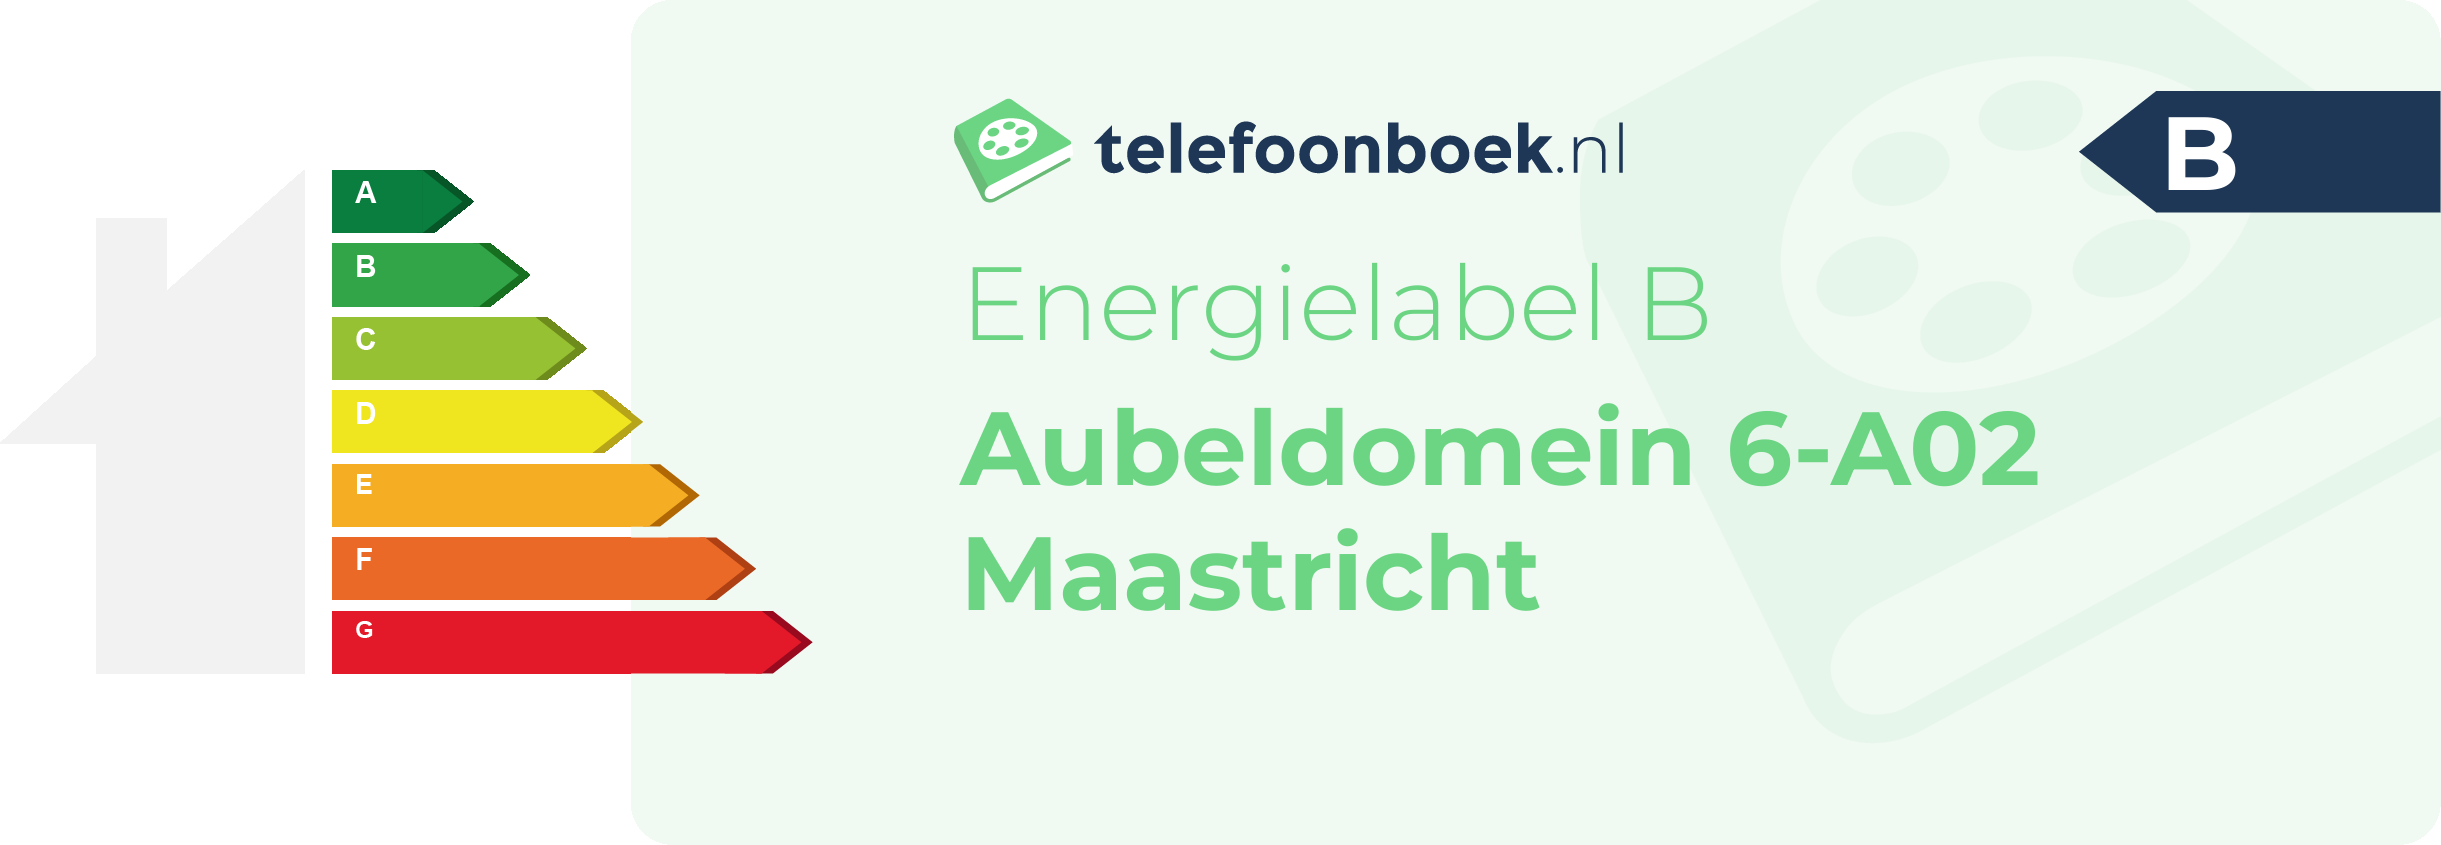 Energielabel Aubeldomein 6-A02 Maastricht